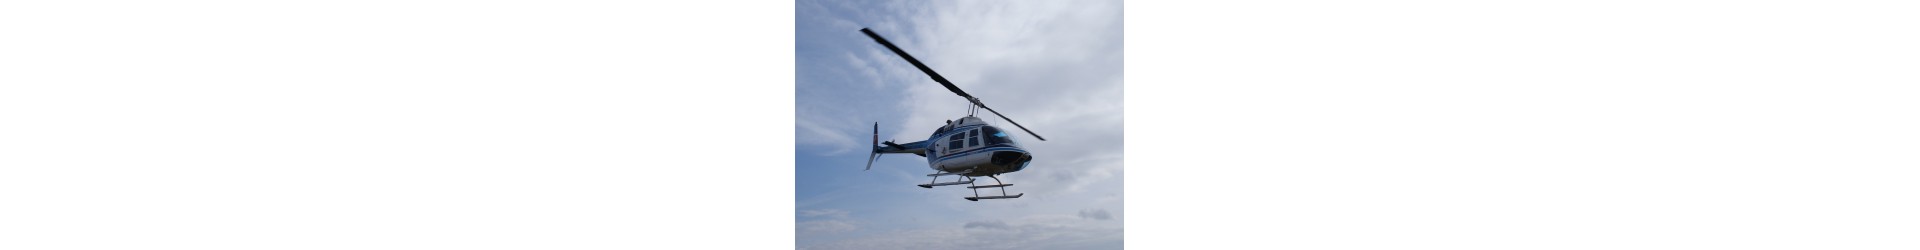 Захватывающий полет на вертолете: Уникальная птичья перспектива